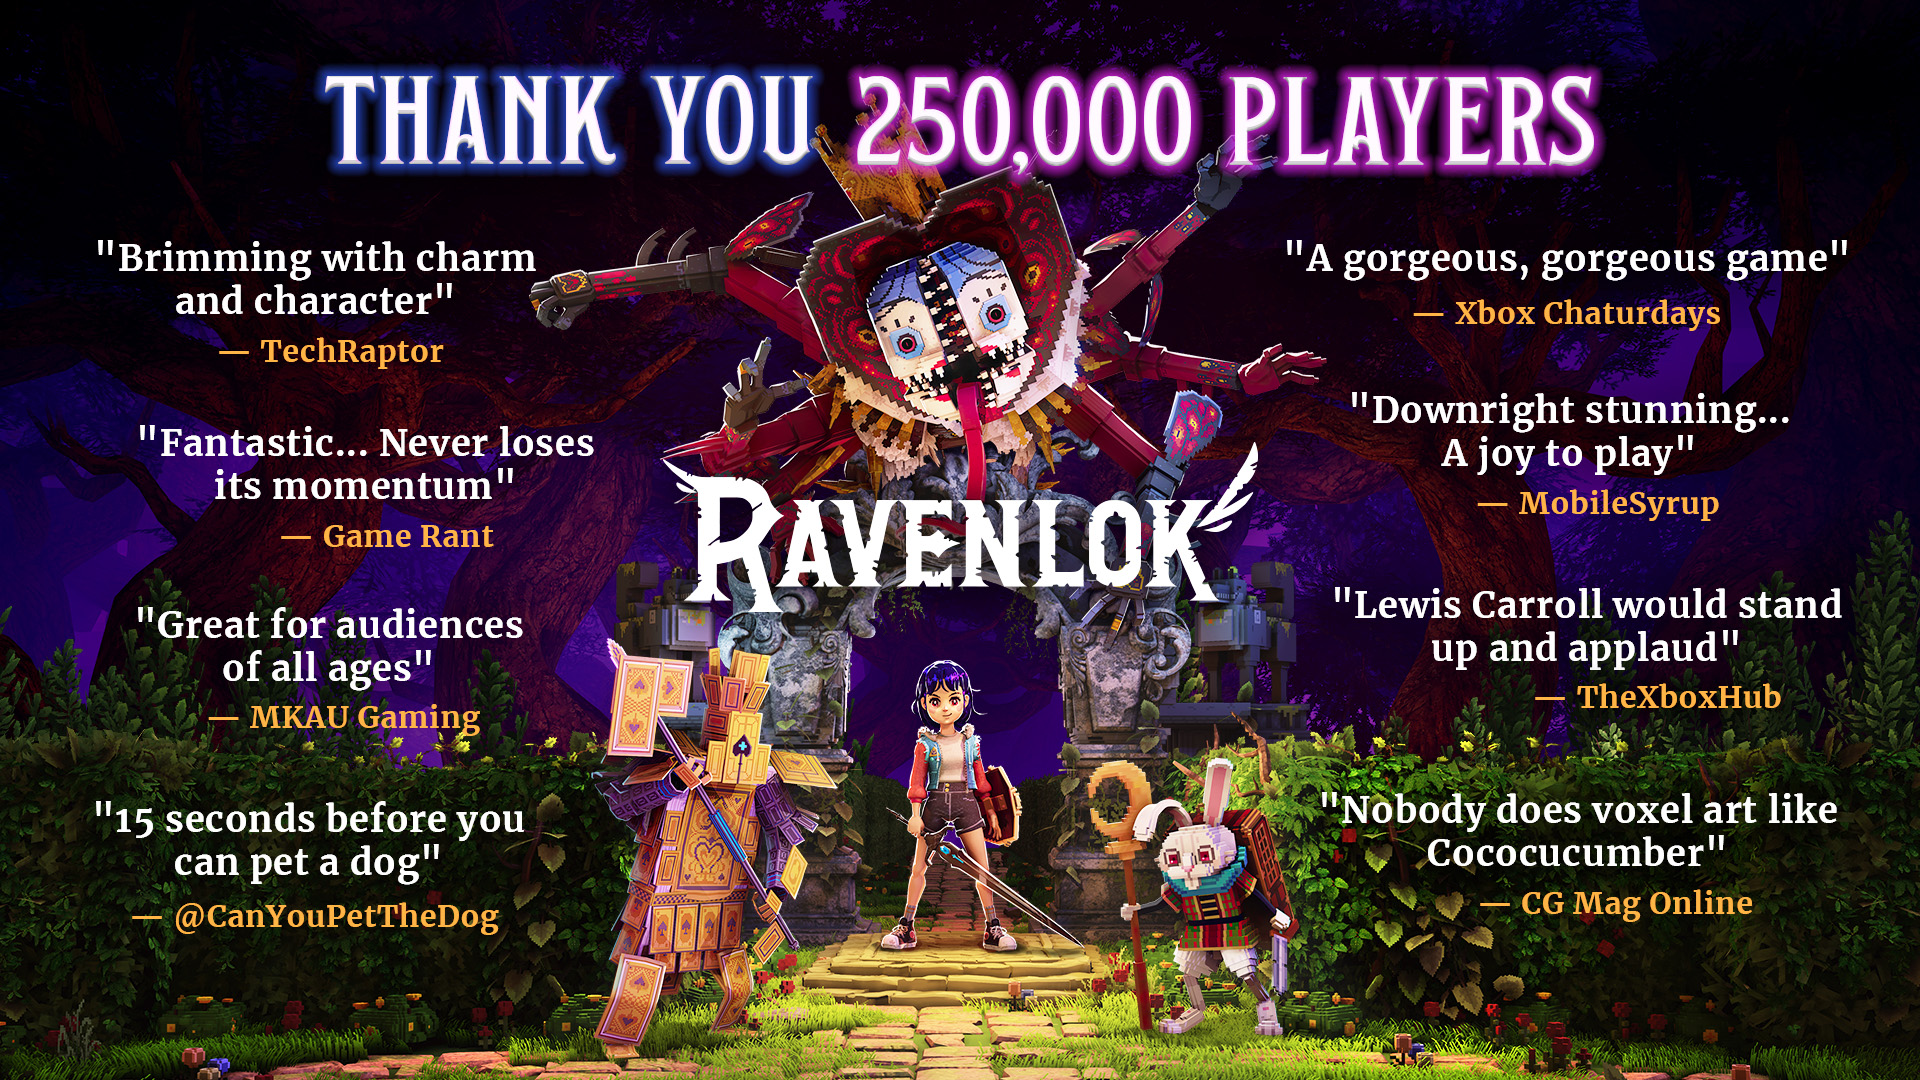 Game Pass помог игре Ravenlok привлечь за неделю 250,000 игроков: с сайта NEWXBOXONE.RU